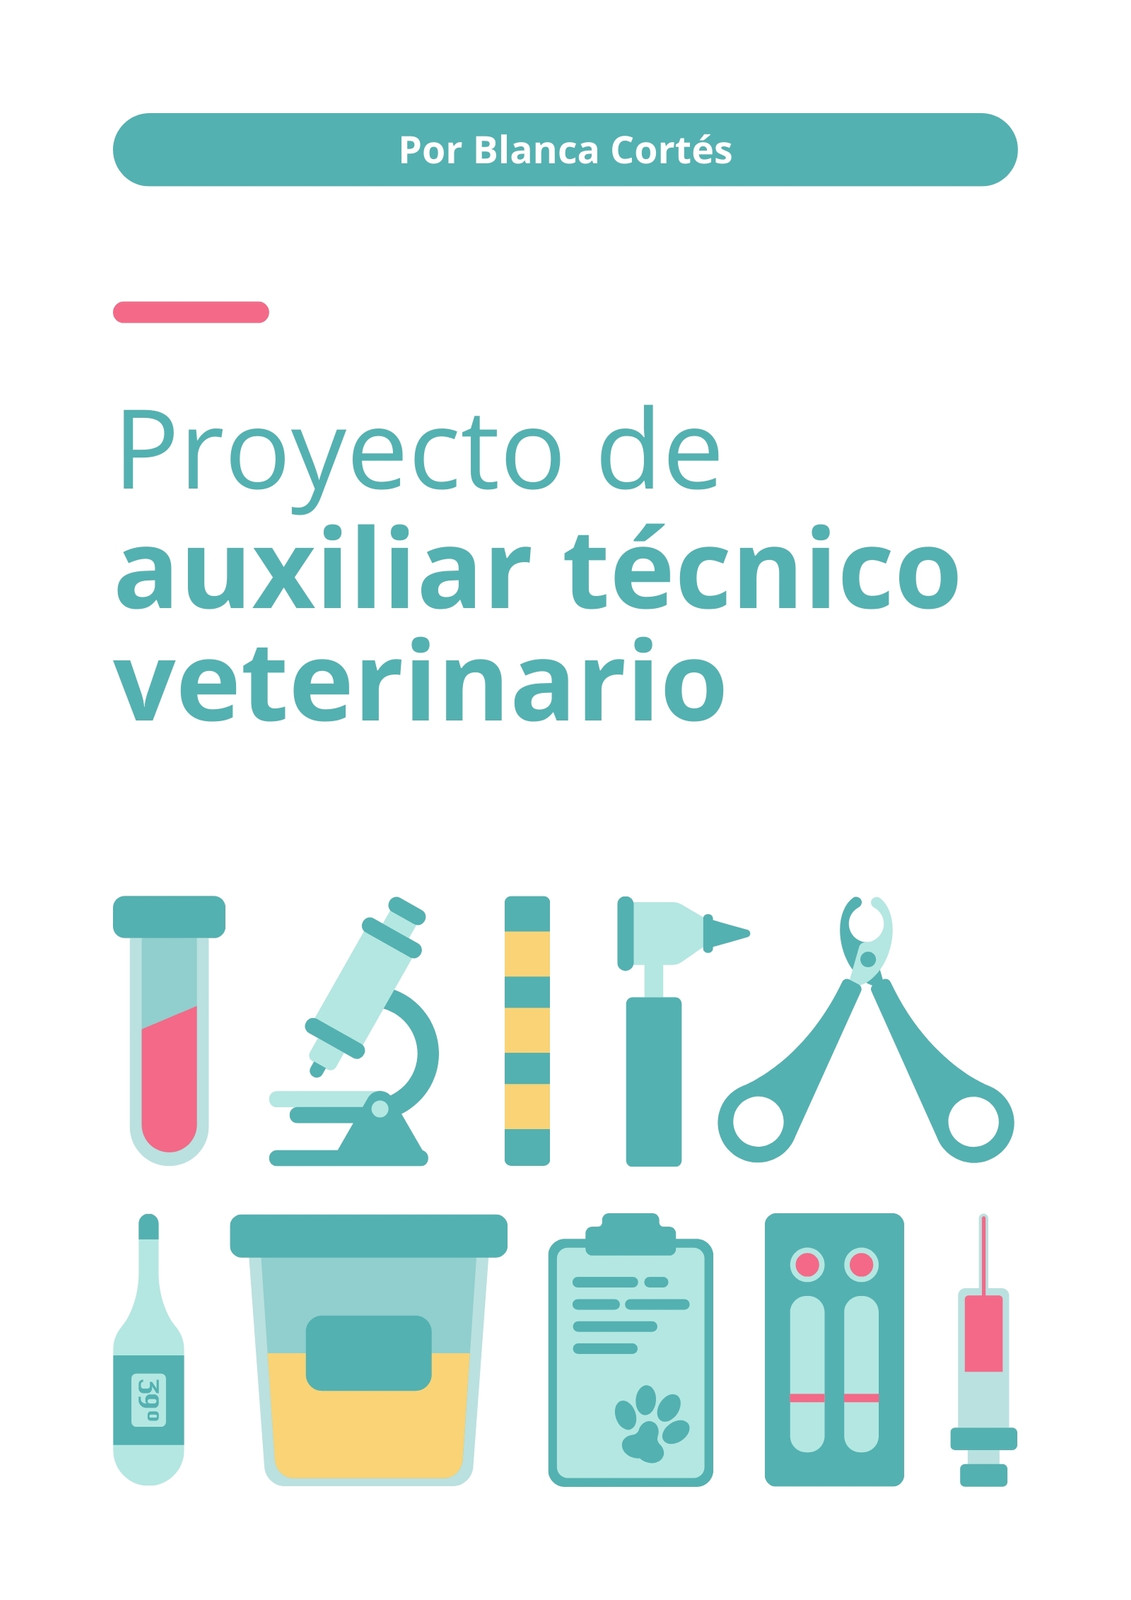 Portada Proyecto de auxiliar técnico veterinario laboratorio Ilustrativo Turquesa